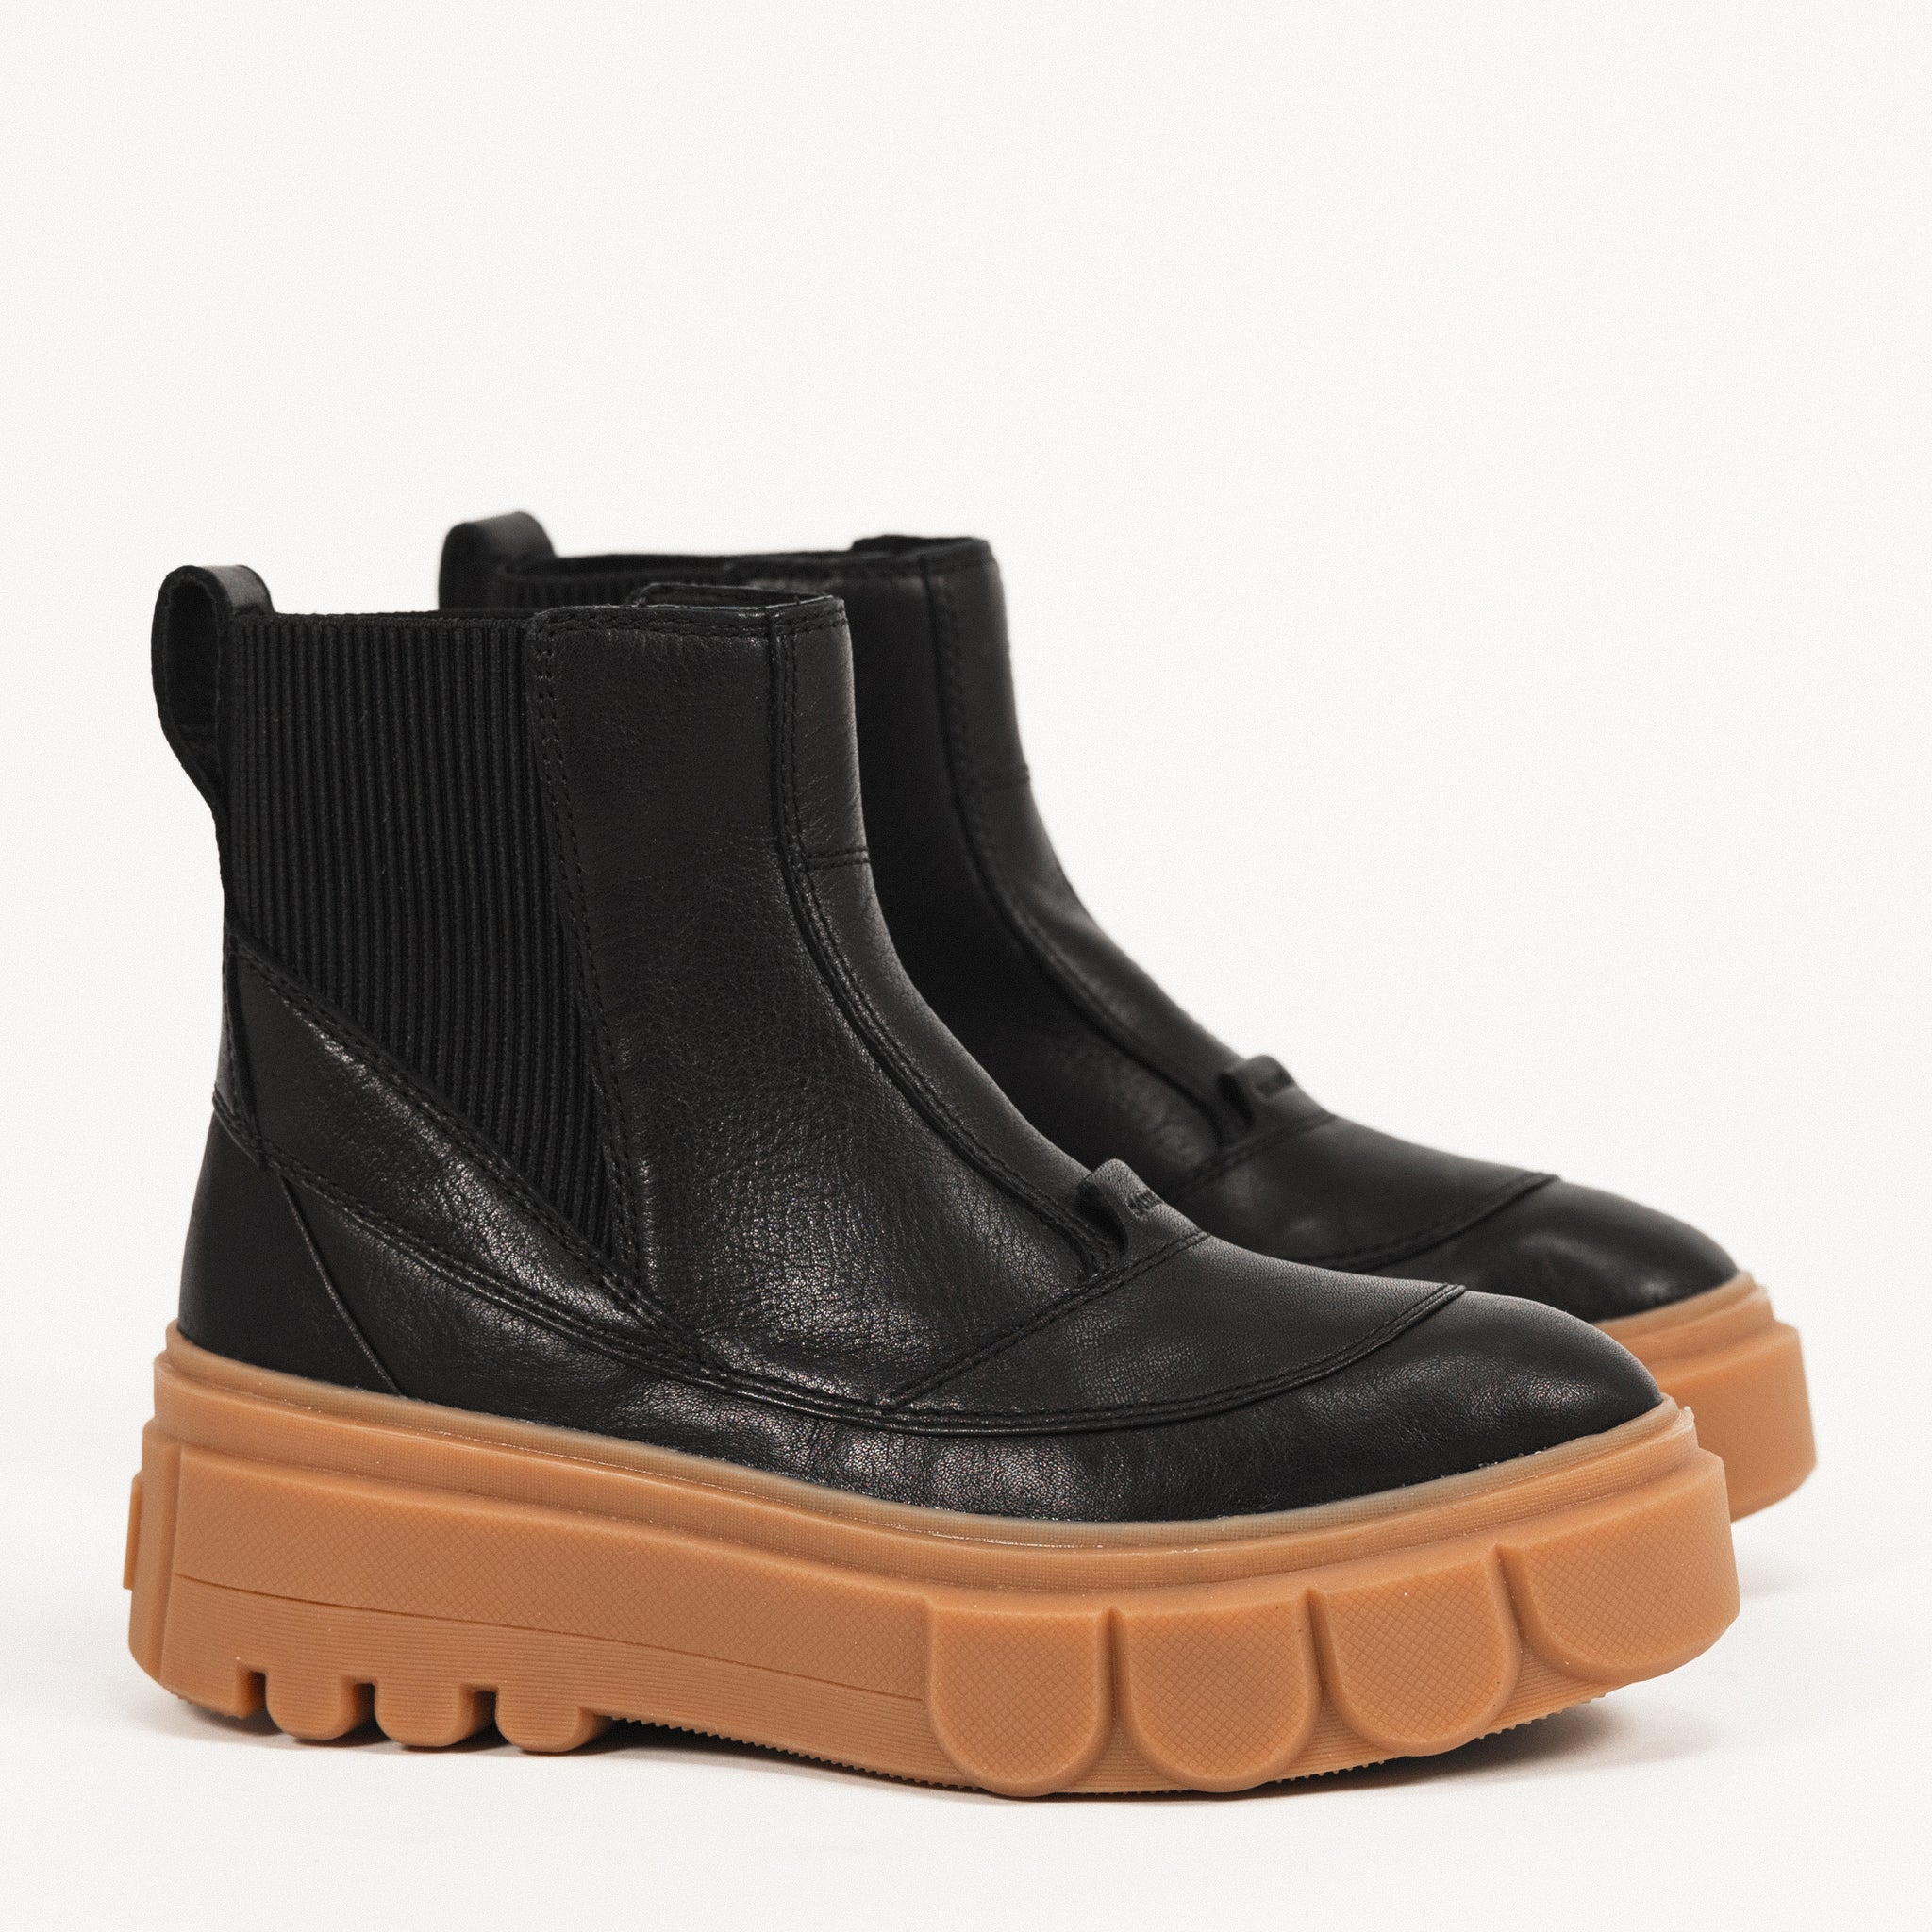 Sorel Footwear – Plaza Shoe Store